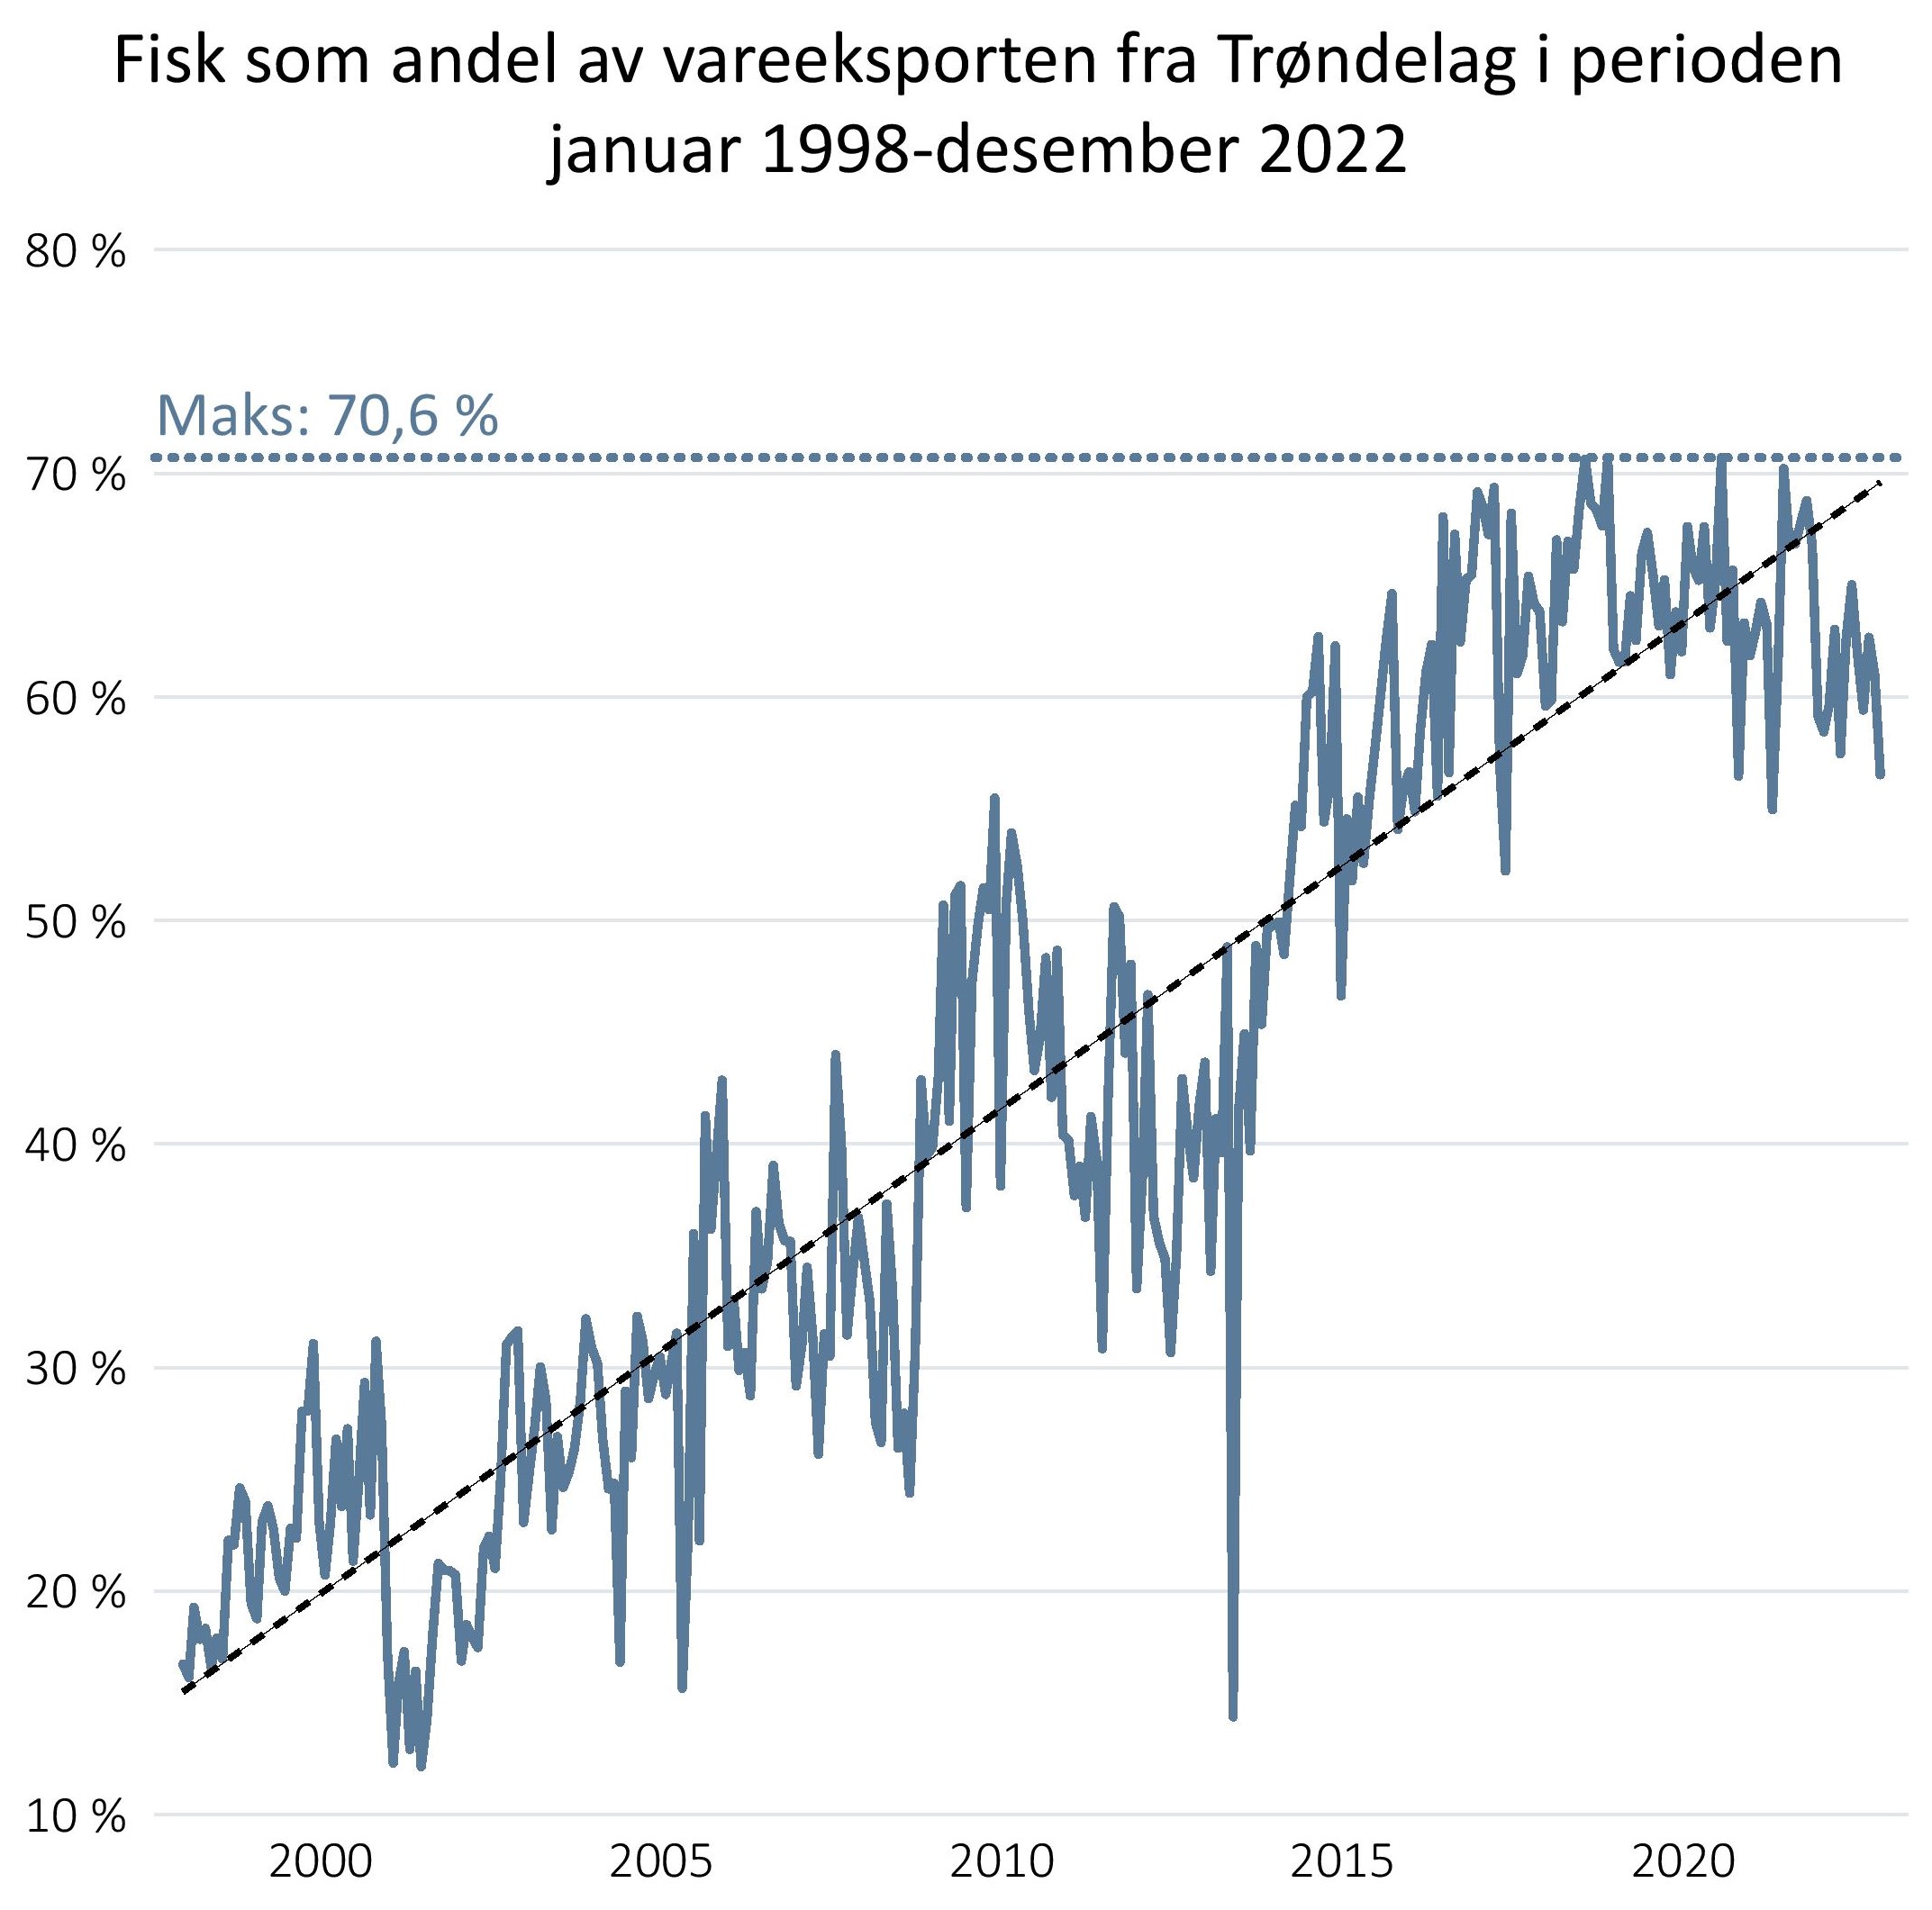 Fisk som andel av vareeksporten fra Trøndelag i perioden januar 1998-desember 2022